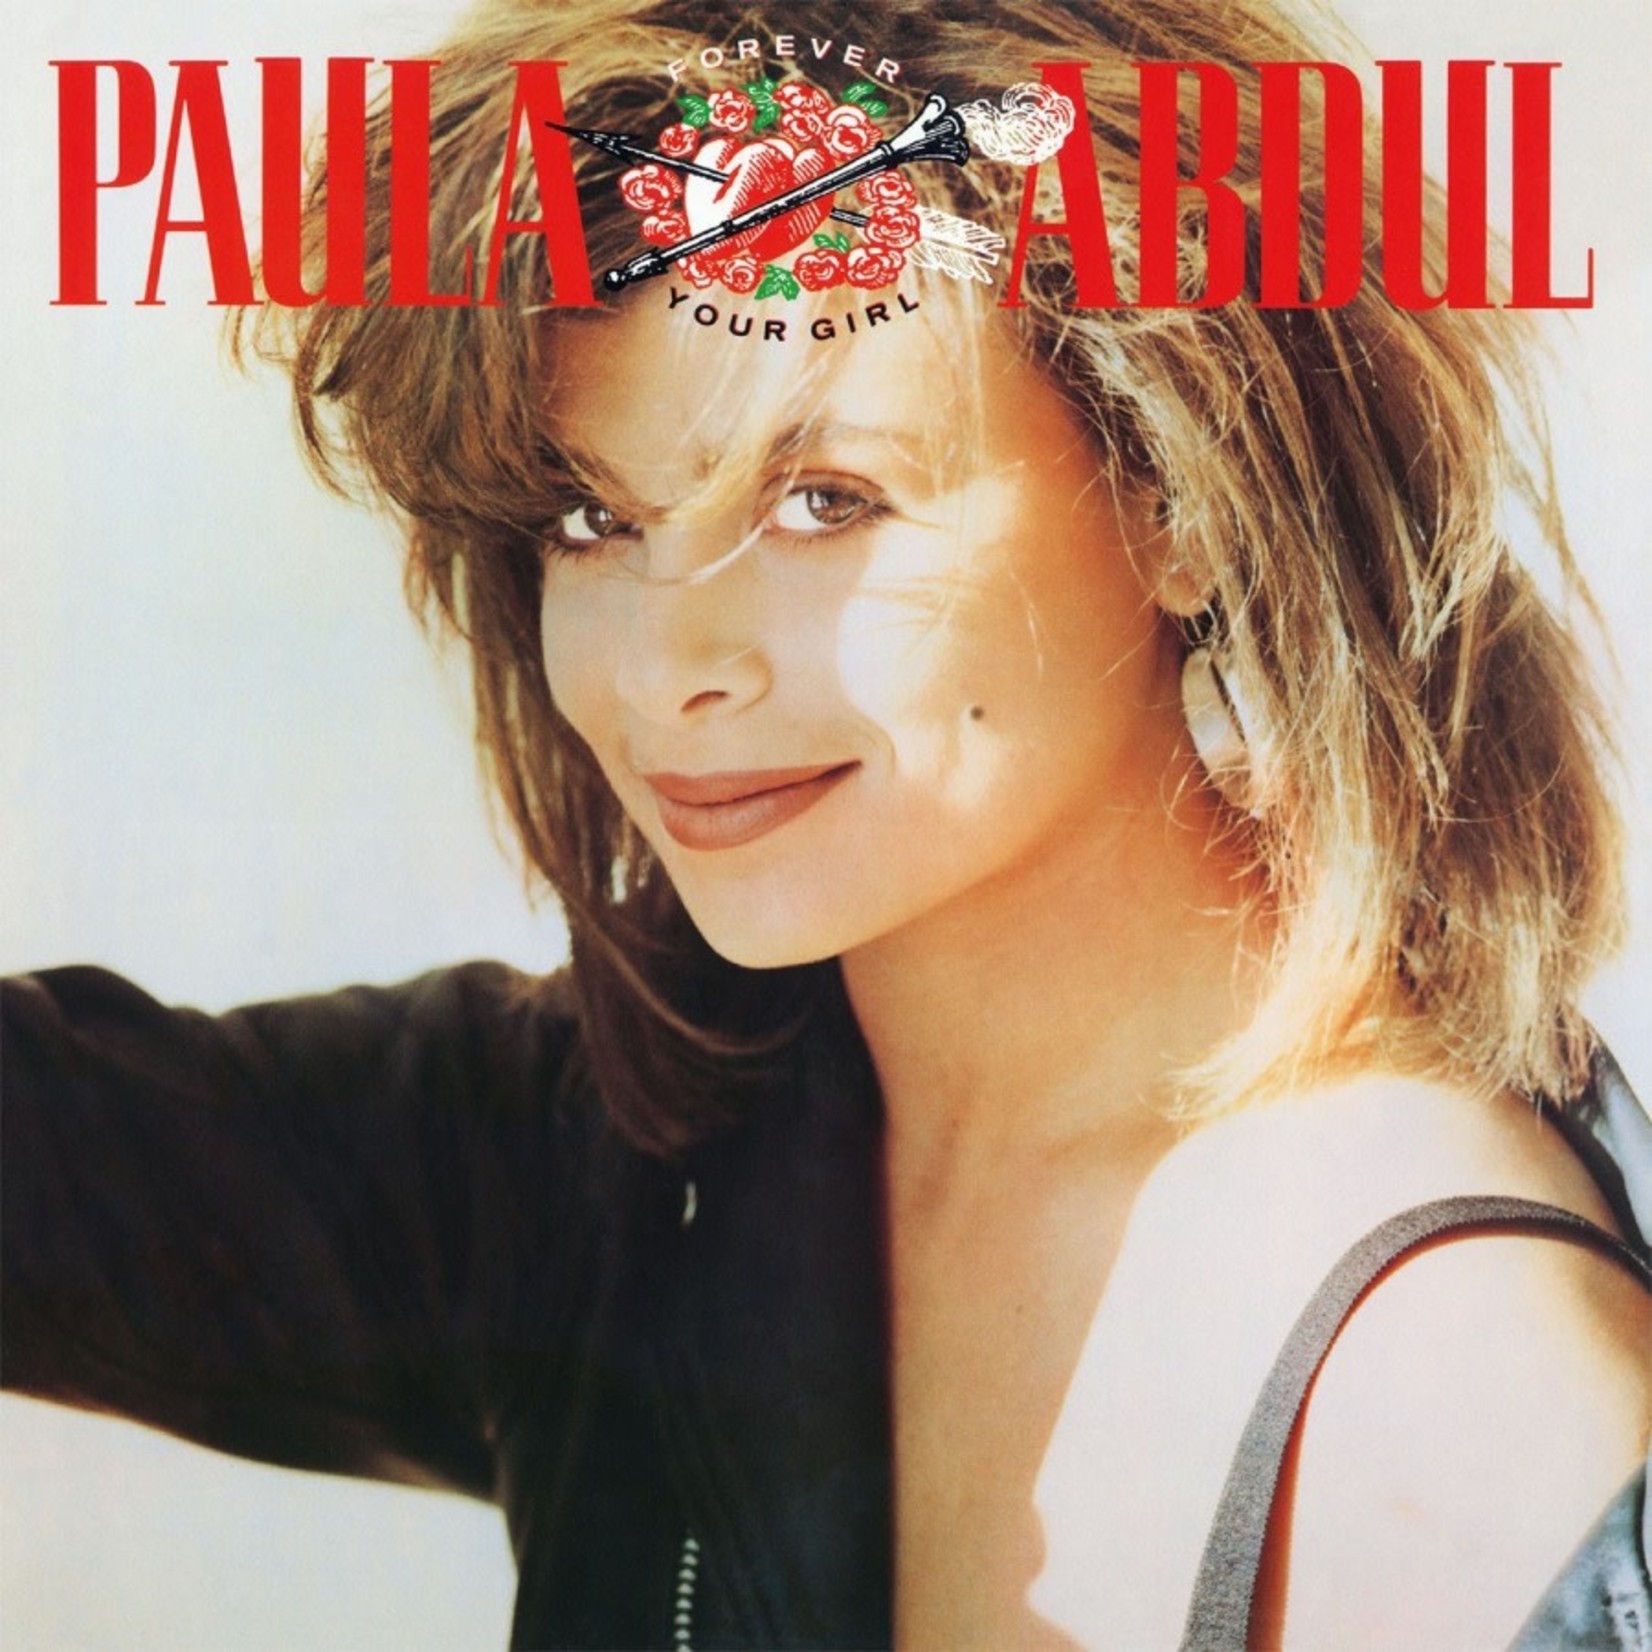 [New] Paula Abdul - Forever Your Girl